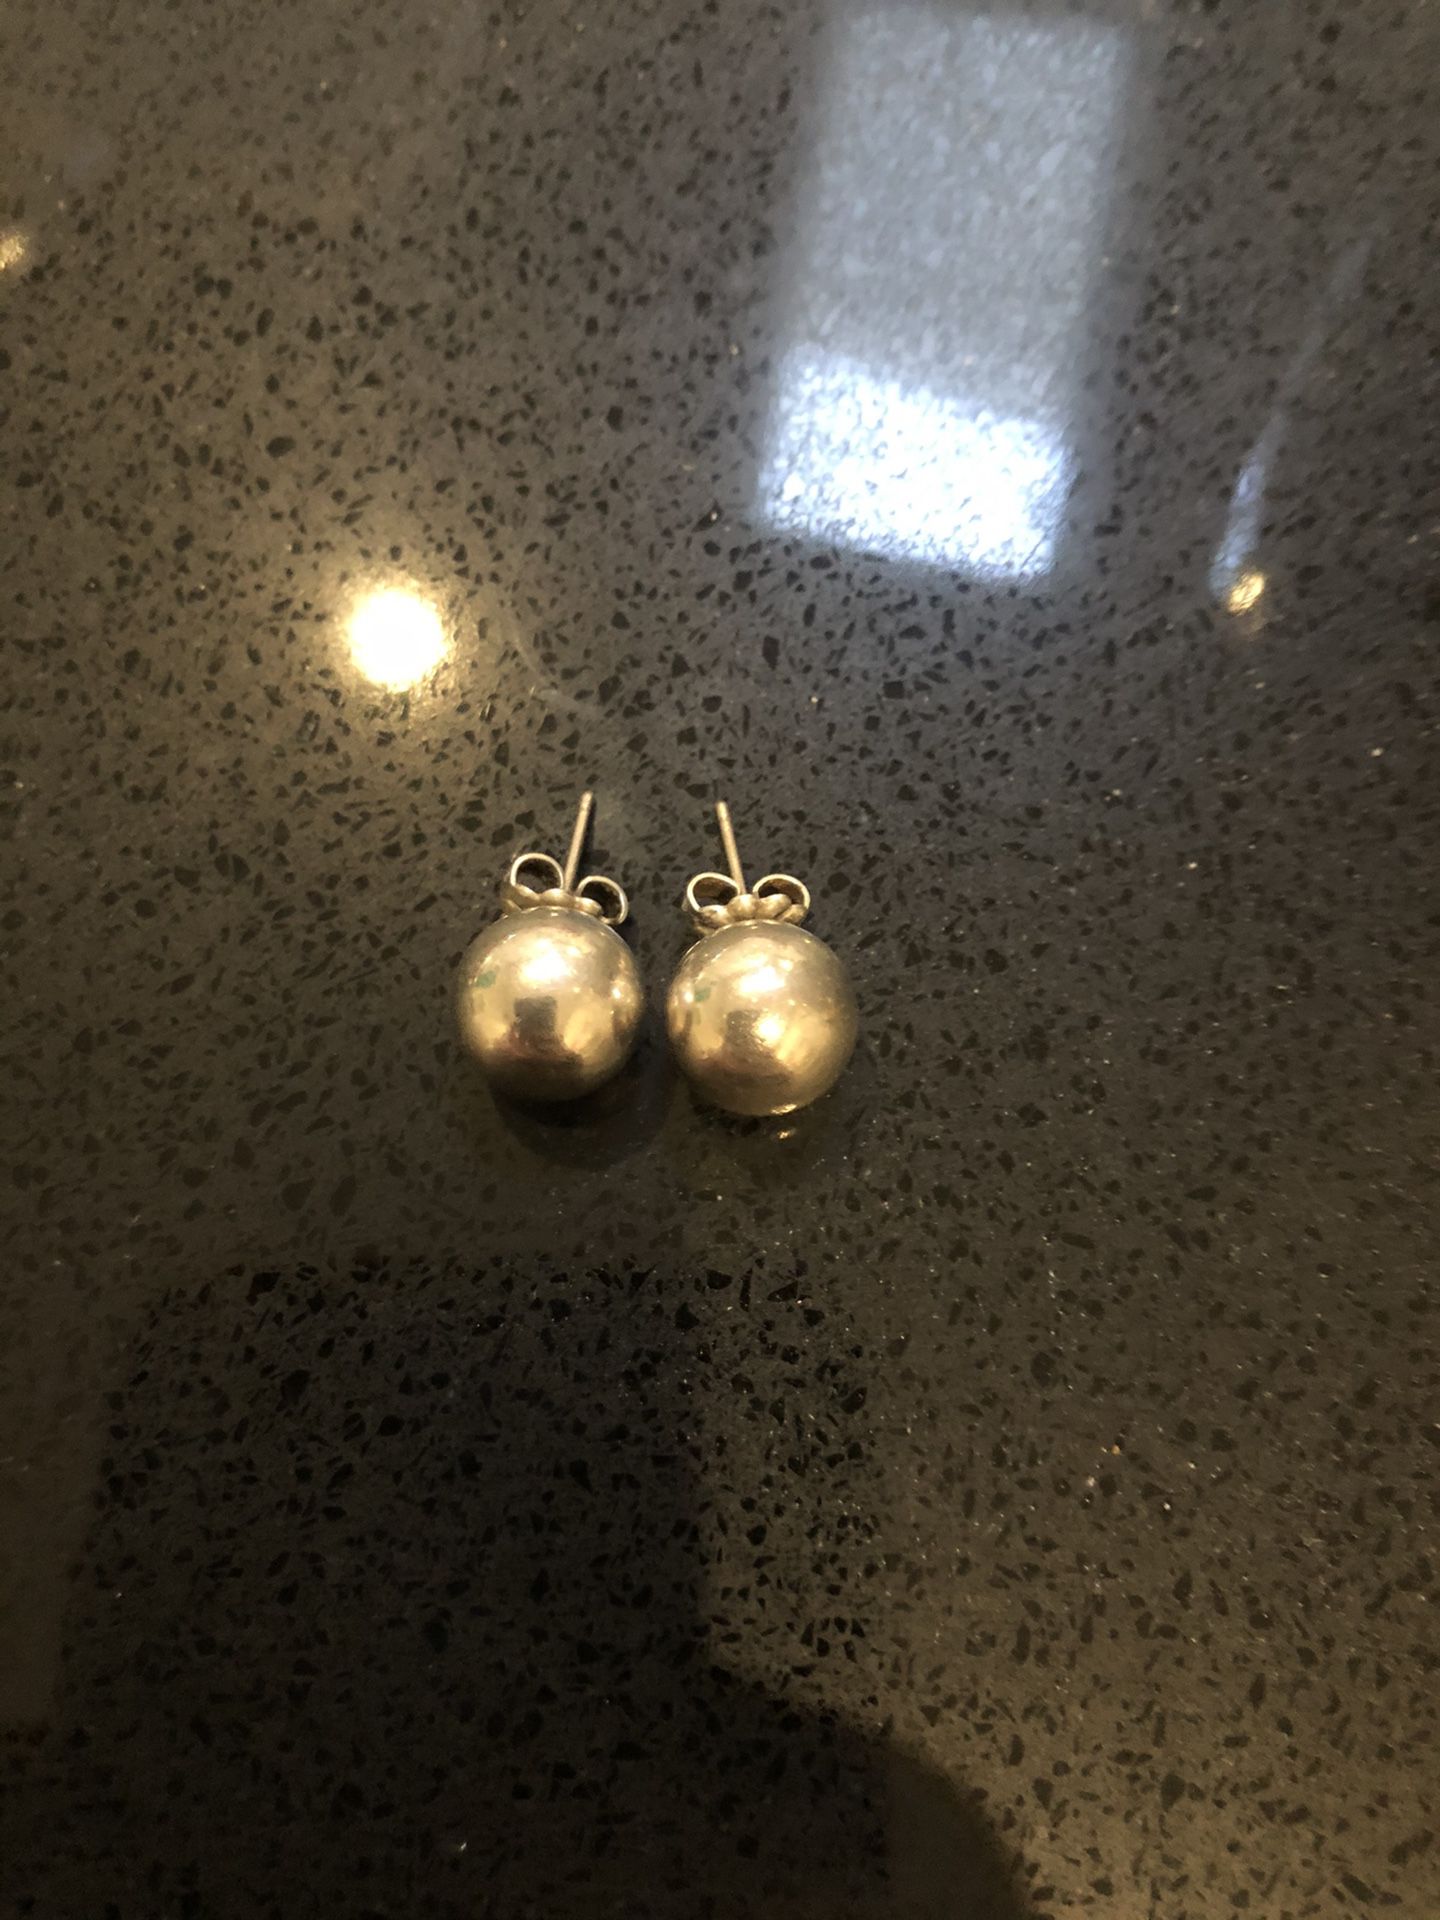 Tiffany’s silver ball earrings